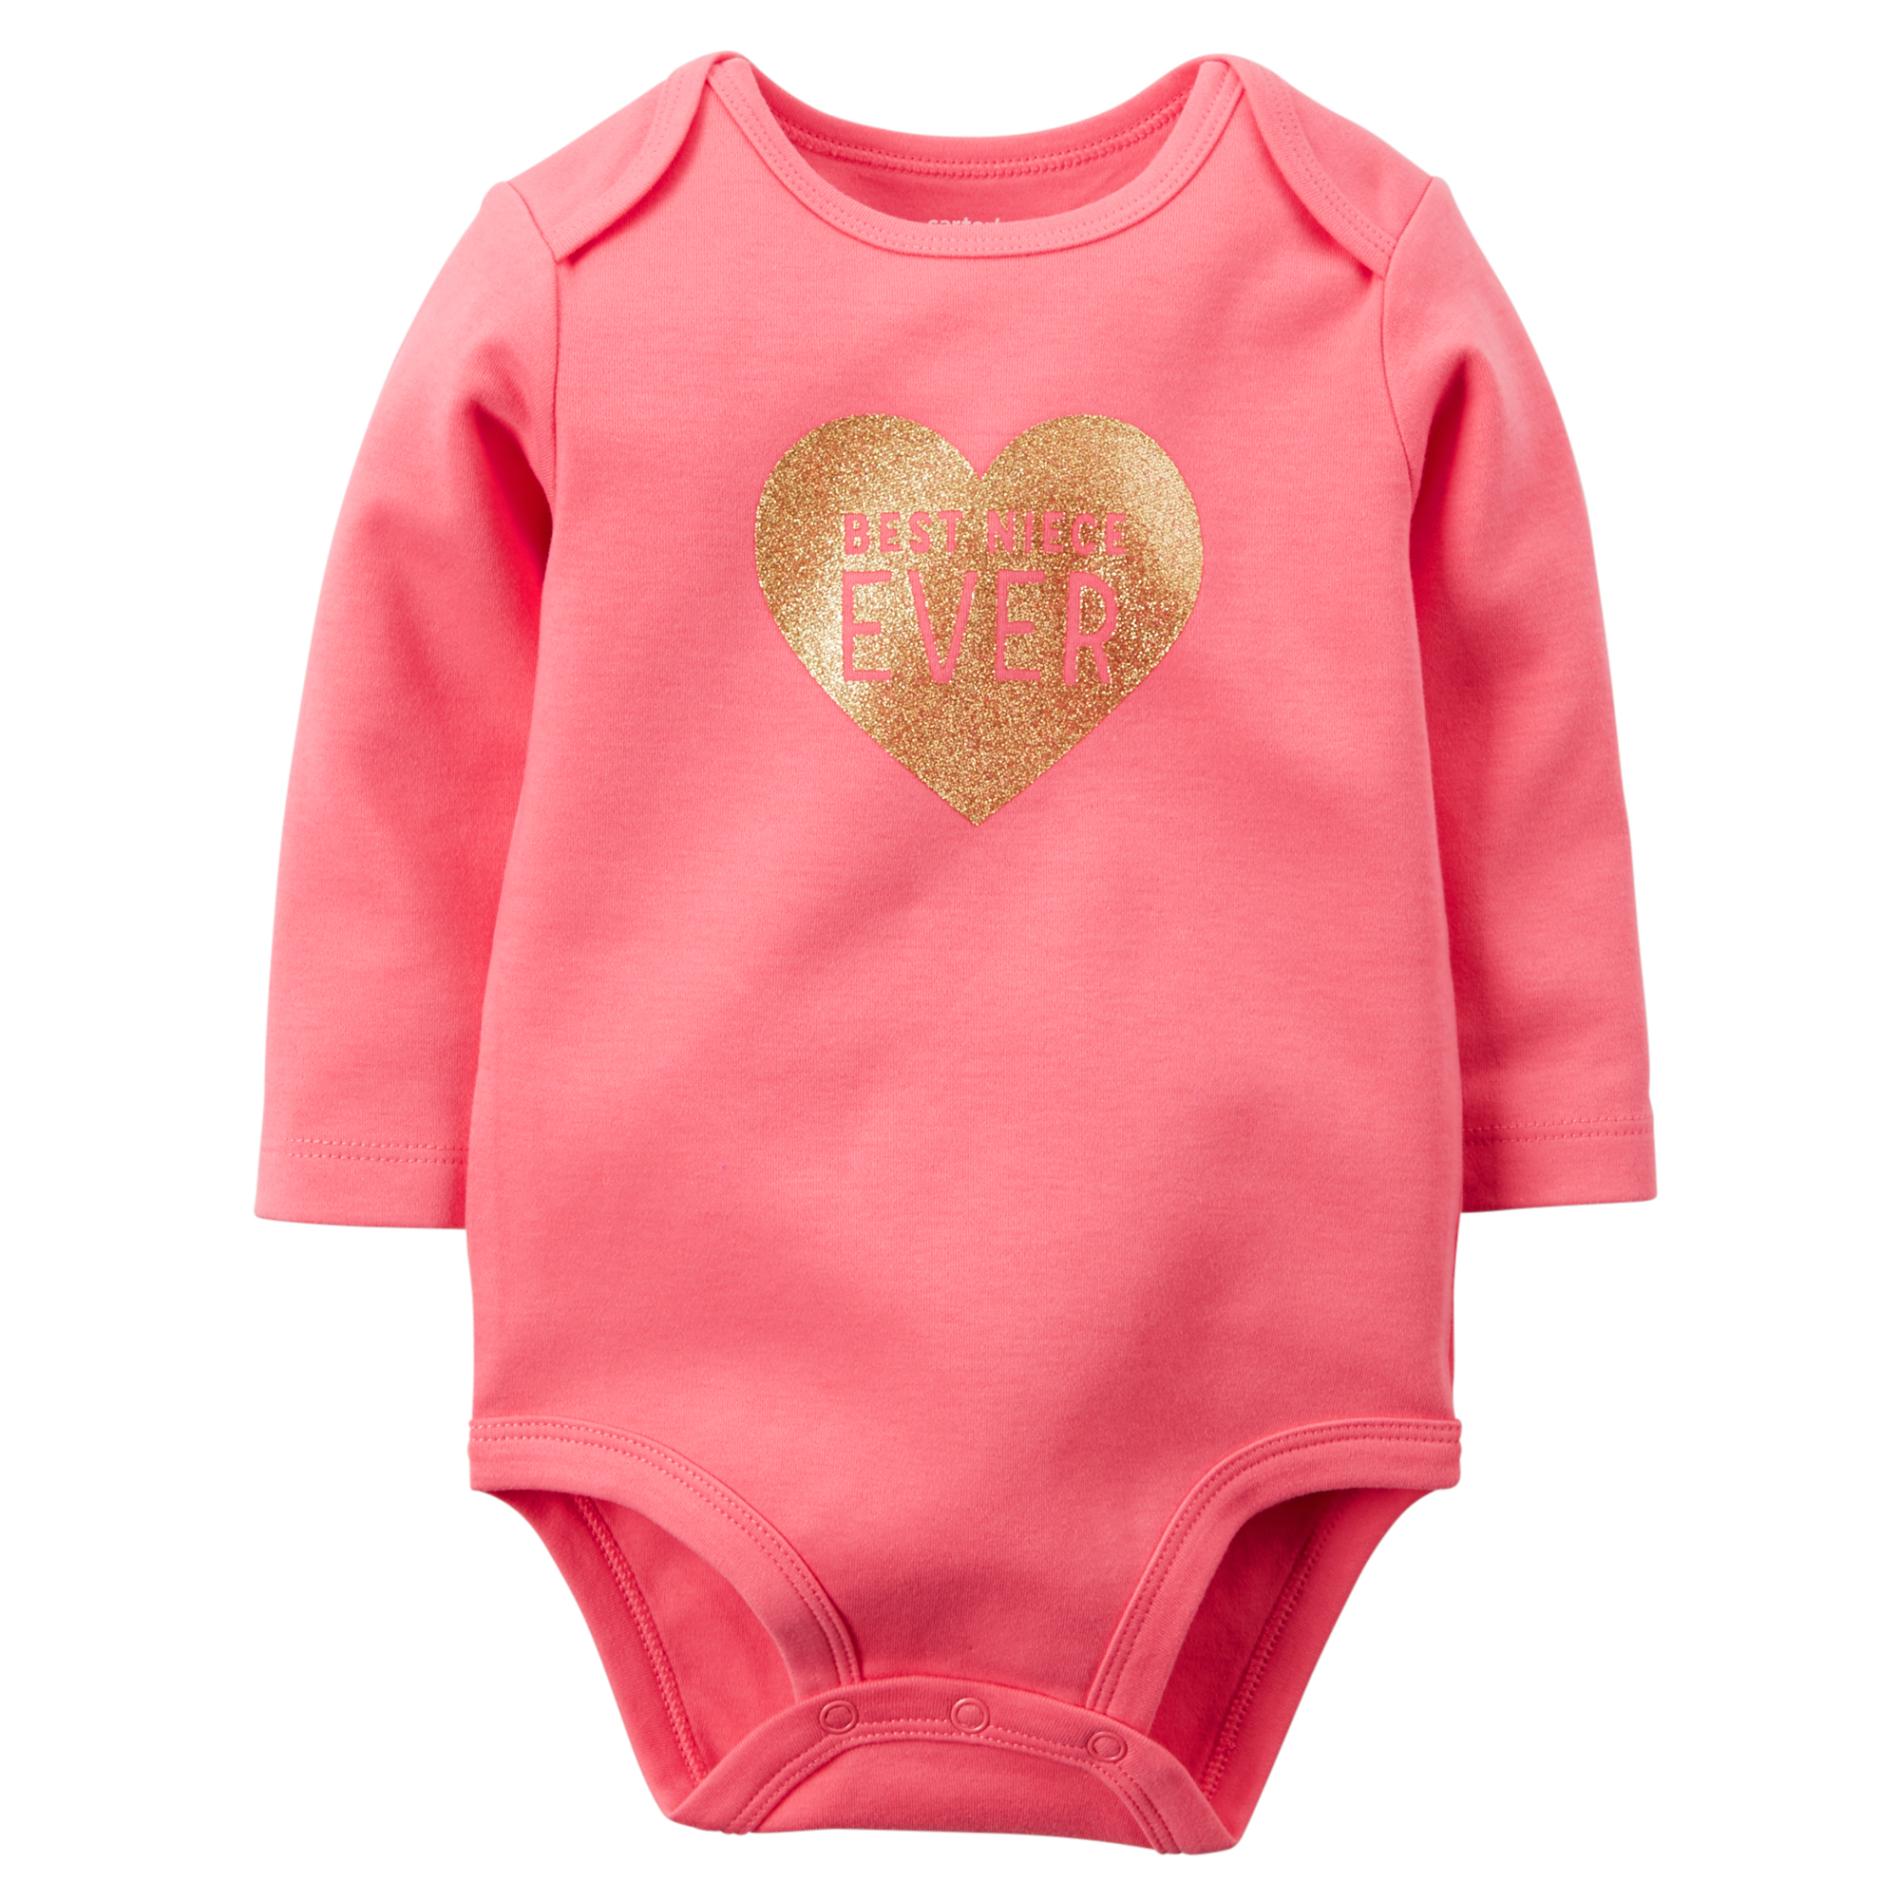 Carter's Newborn & Infant Girl's Long-Sleeve Bodysuit - Heart